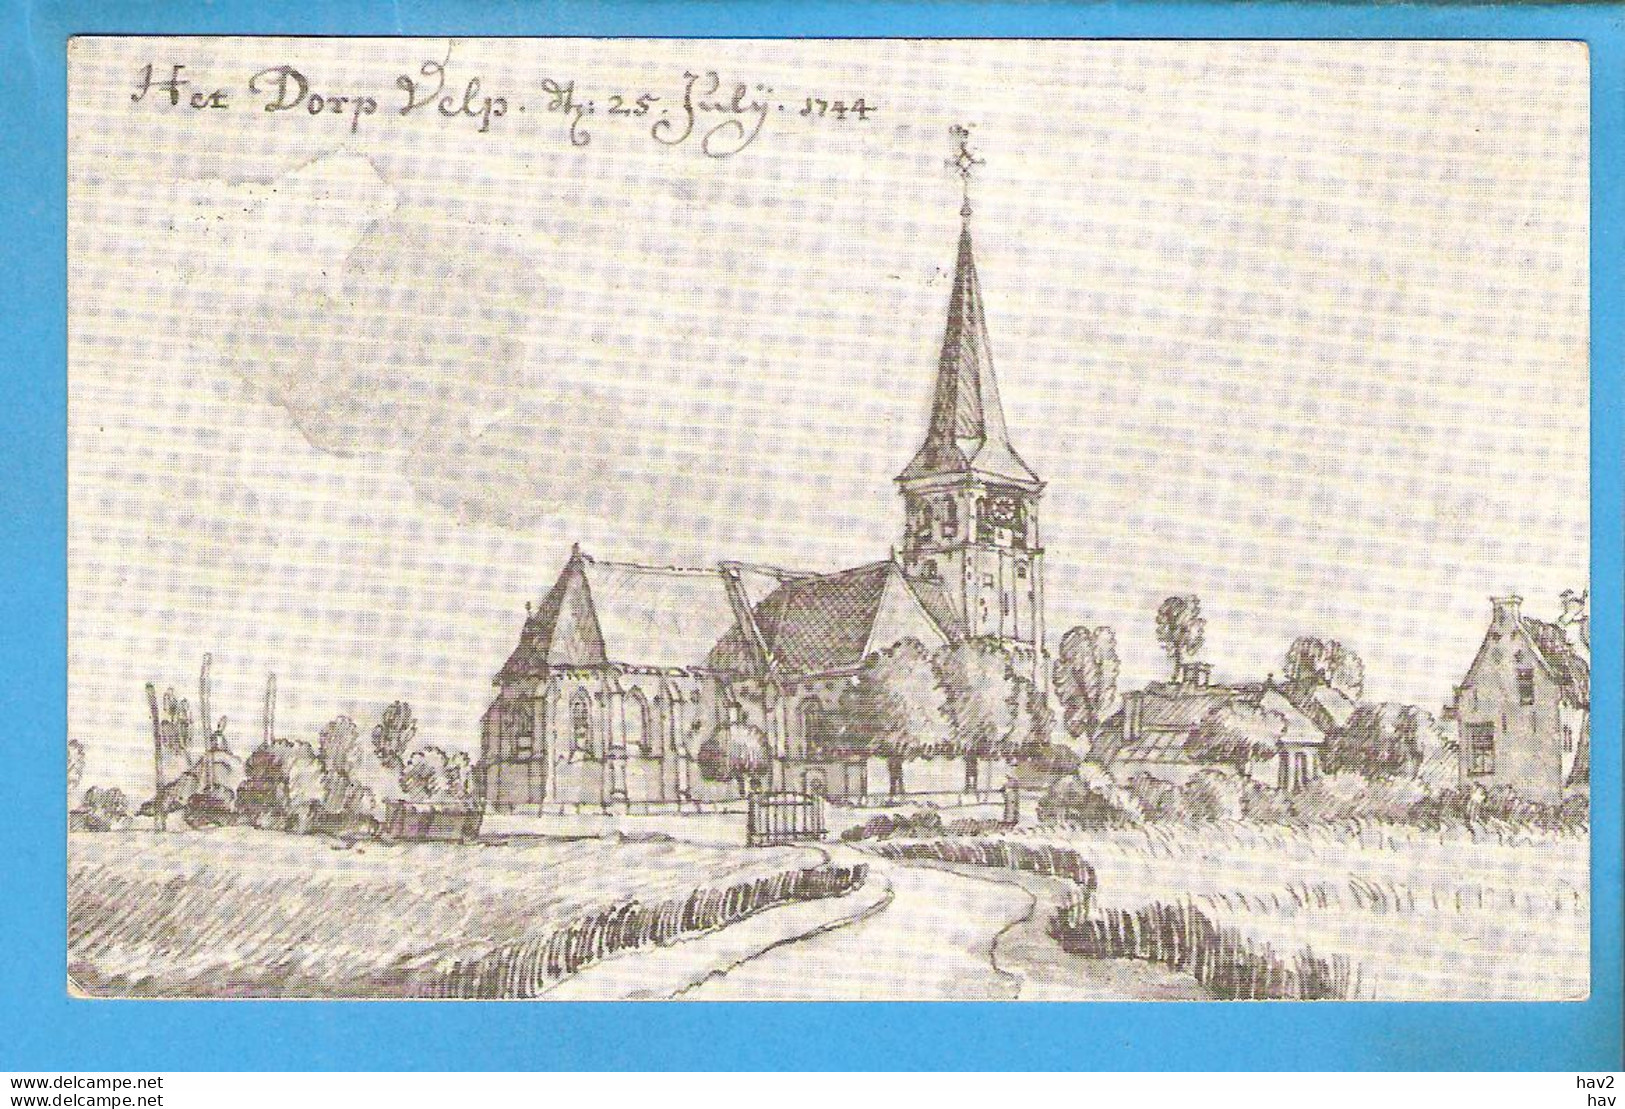 Velp Zoals In 1744 Naar Pentekening RY51411 - Velp / Rozendaal